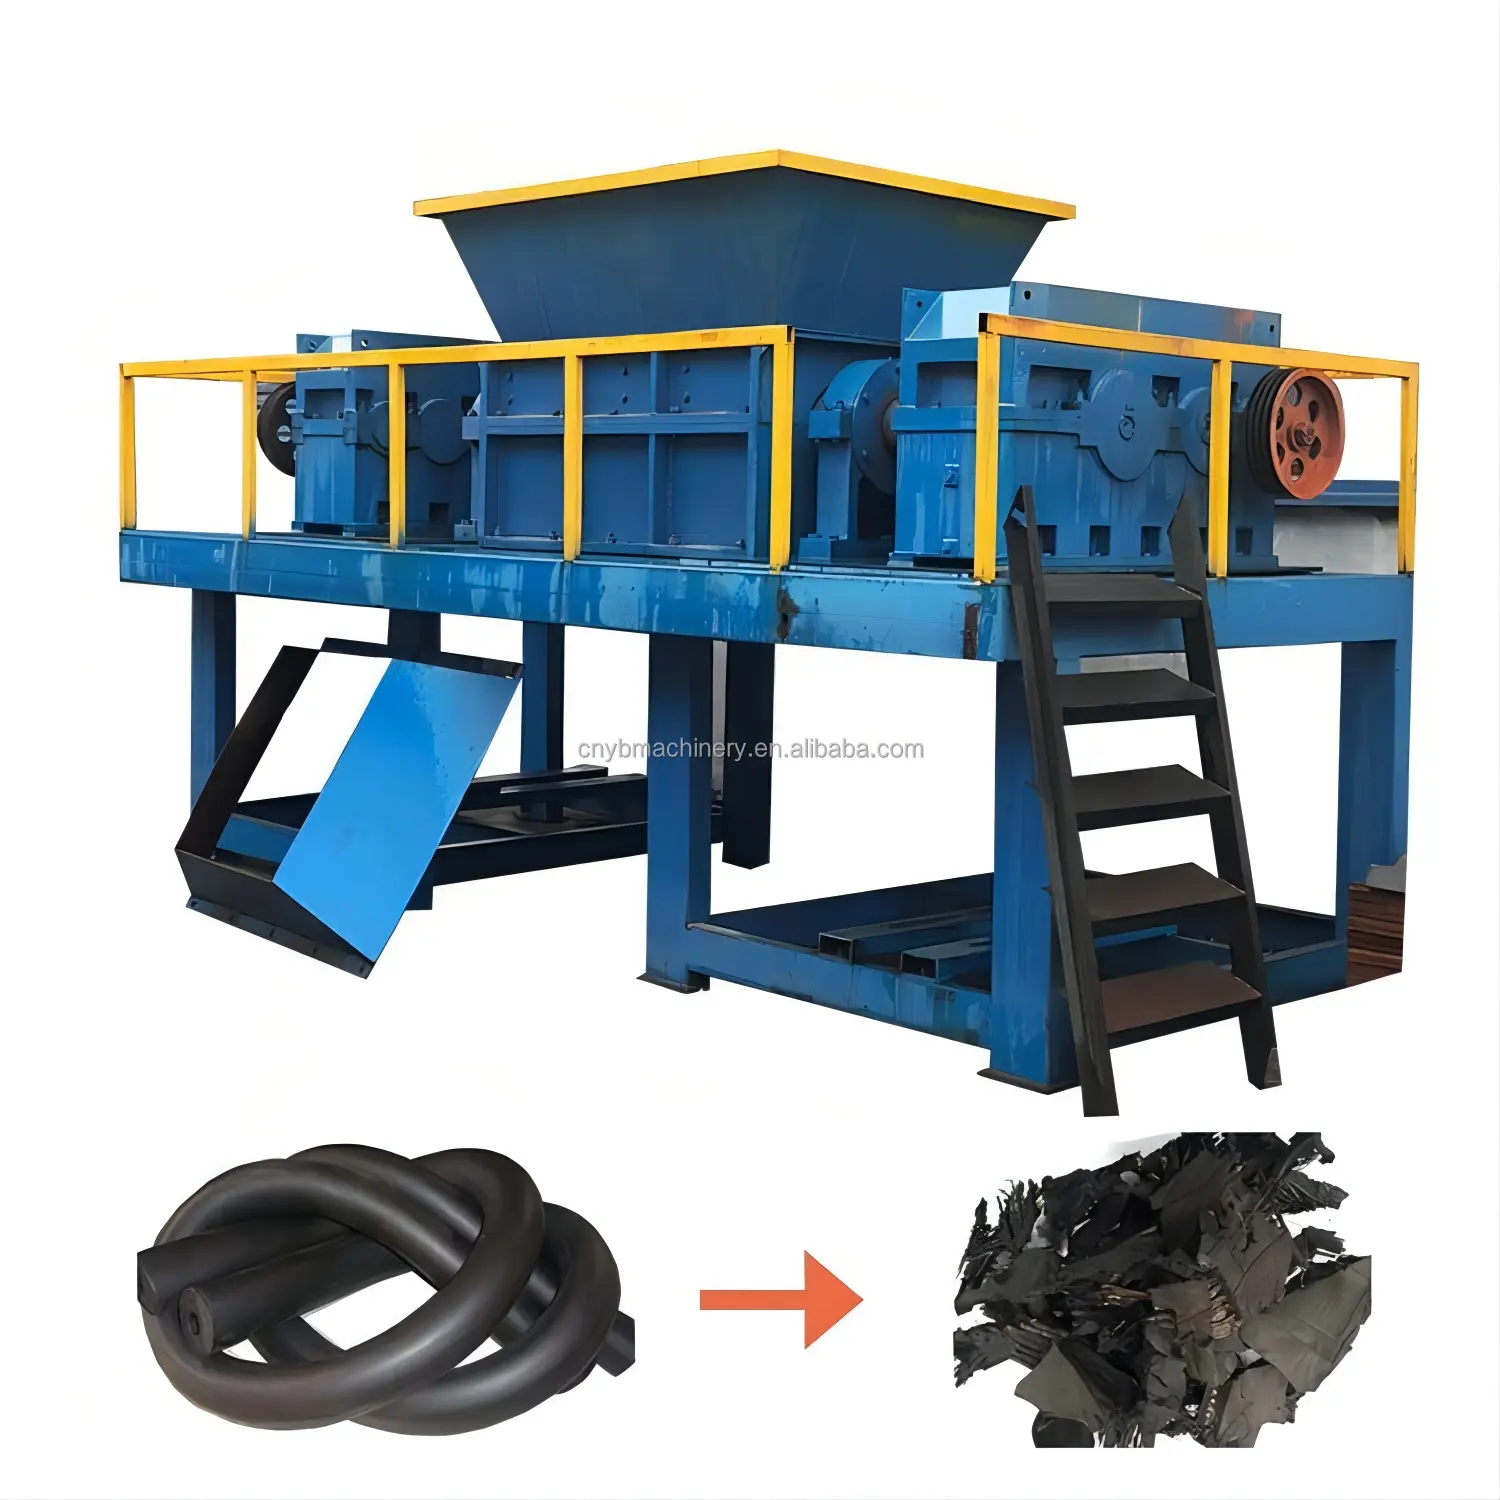 Trituradora de desechos de aluminio y acero de gran capacidad, trituradora de cuerpo de coche, trituradora de Metal de dos ejes para reciclaje